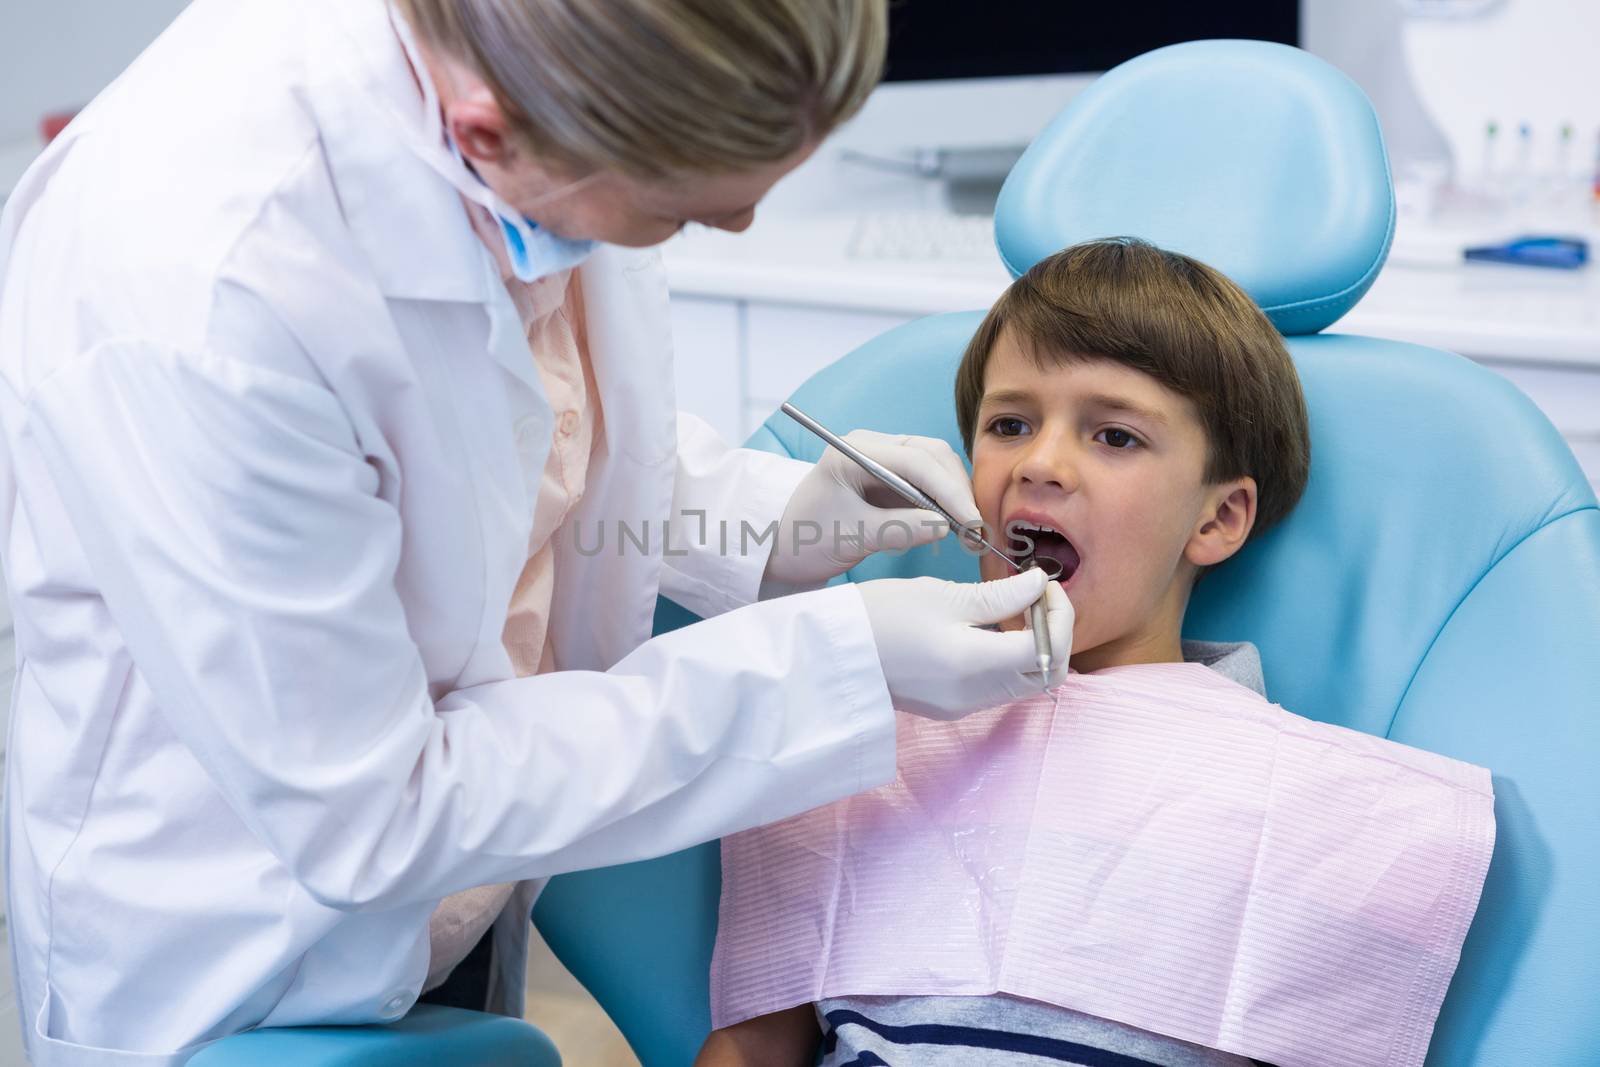 Boy receiving dental treatment by dentist by Wavebreakmedia